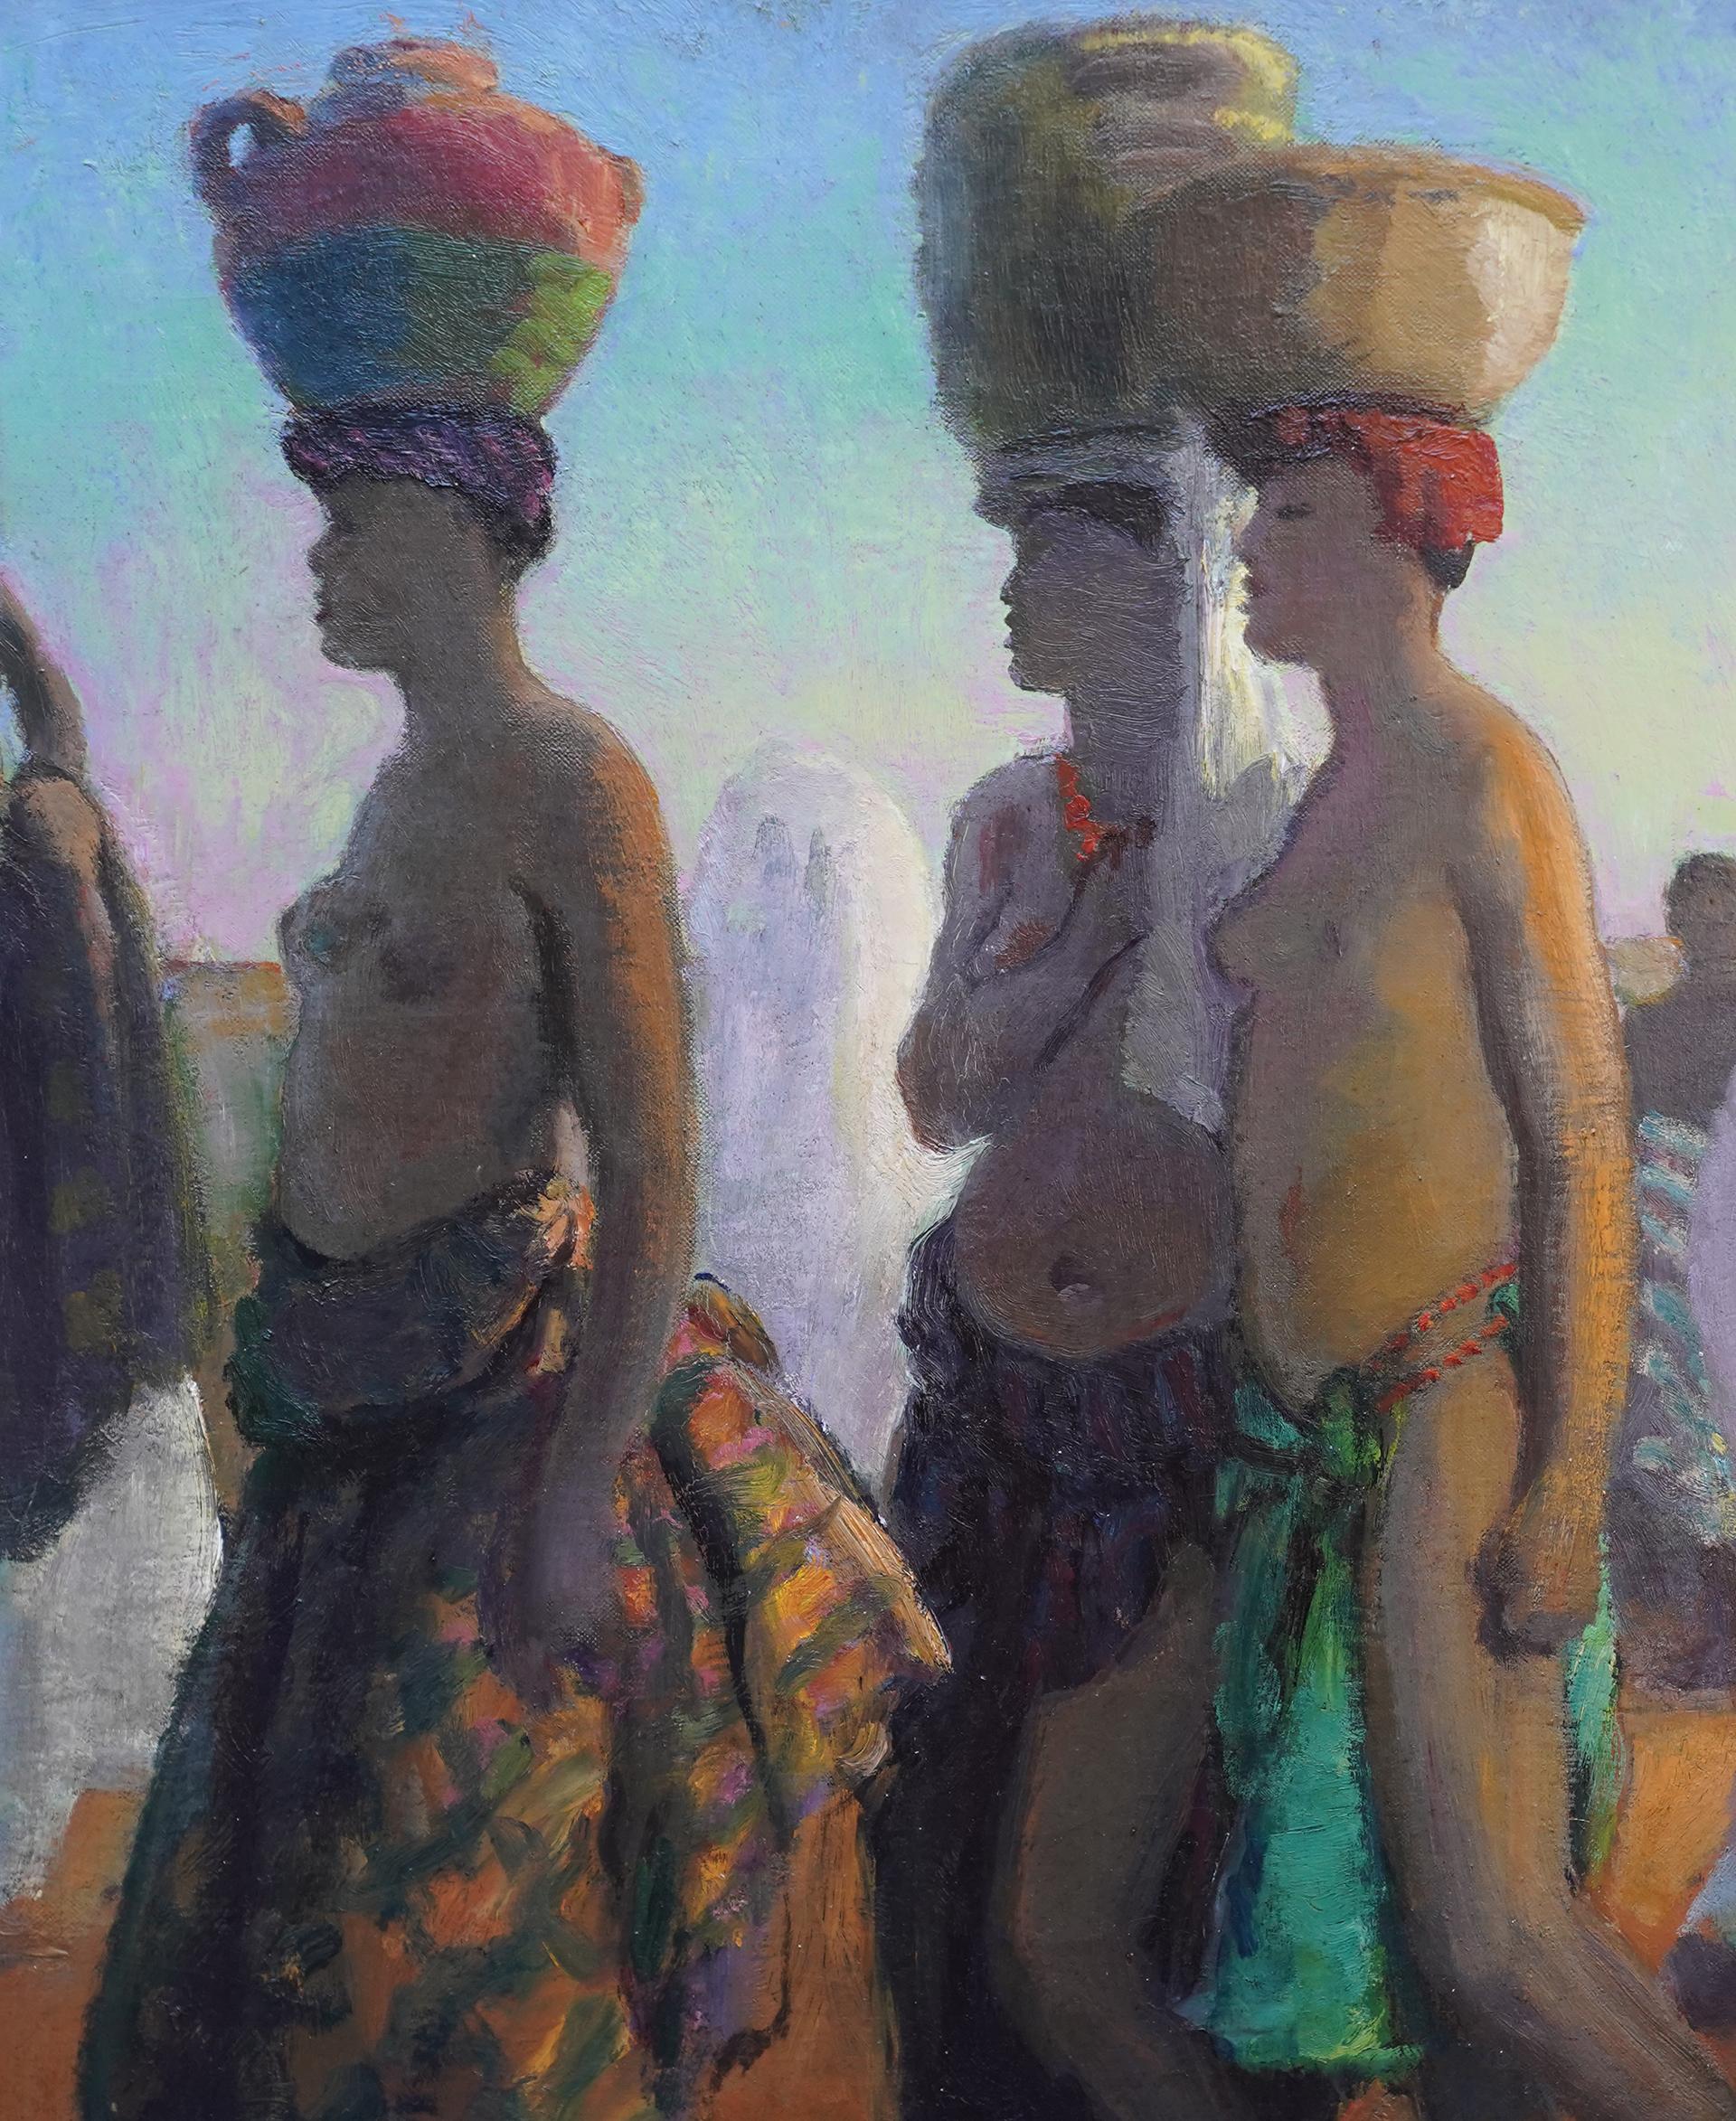 Ritratto di portatori d'acqua, Africa - pittura ad olio di arte orientalista britannica del 1920 - Figurative Painting Grigio di Spencer Pryse